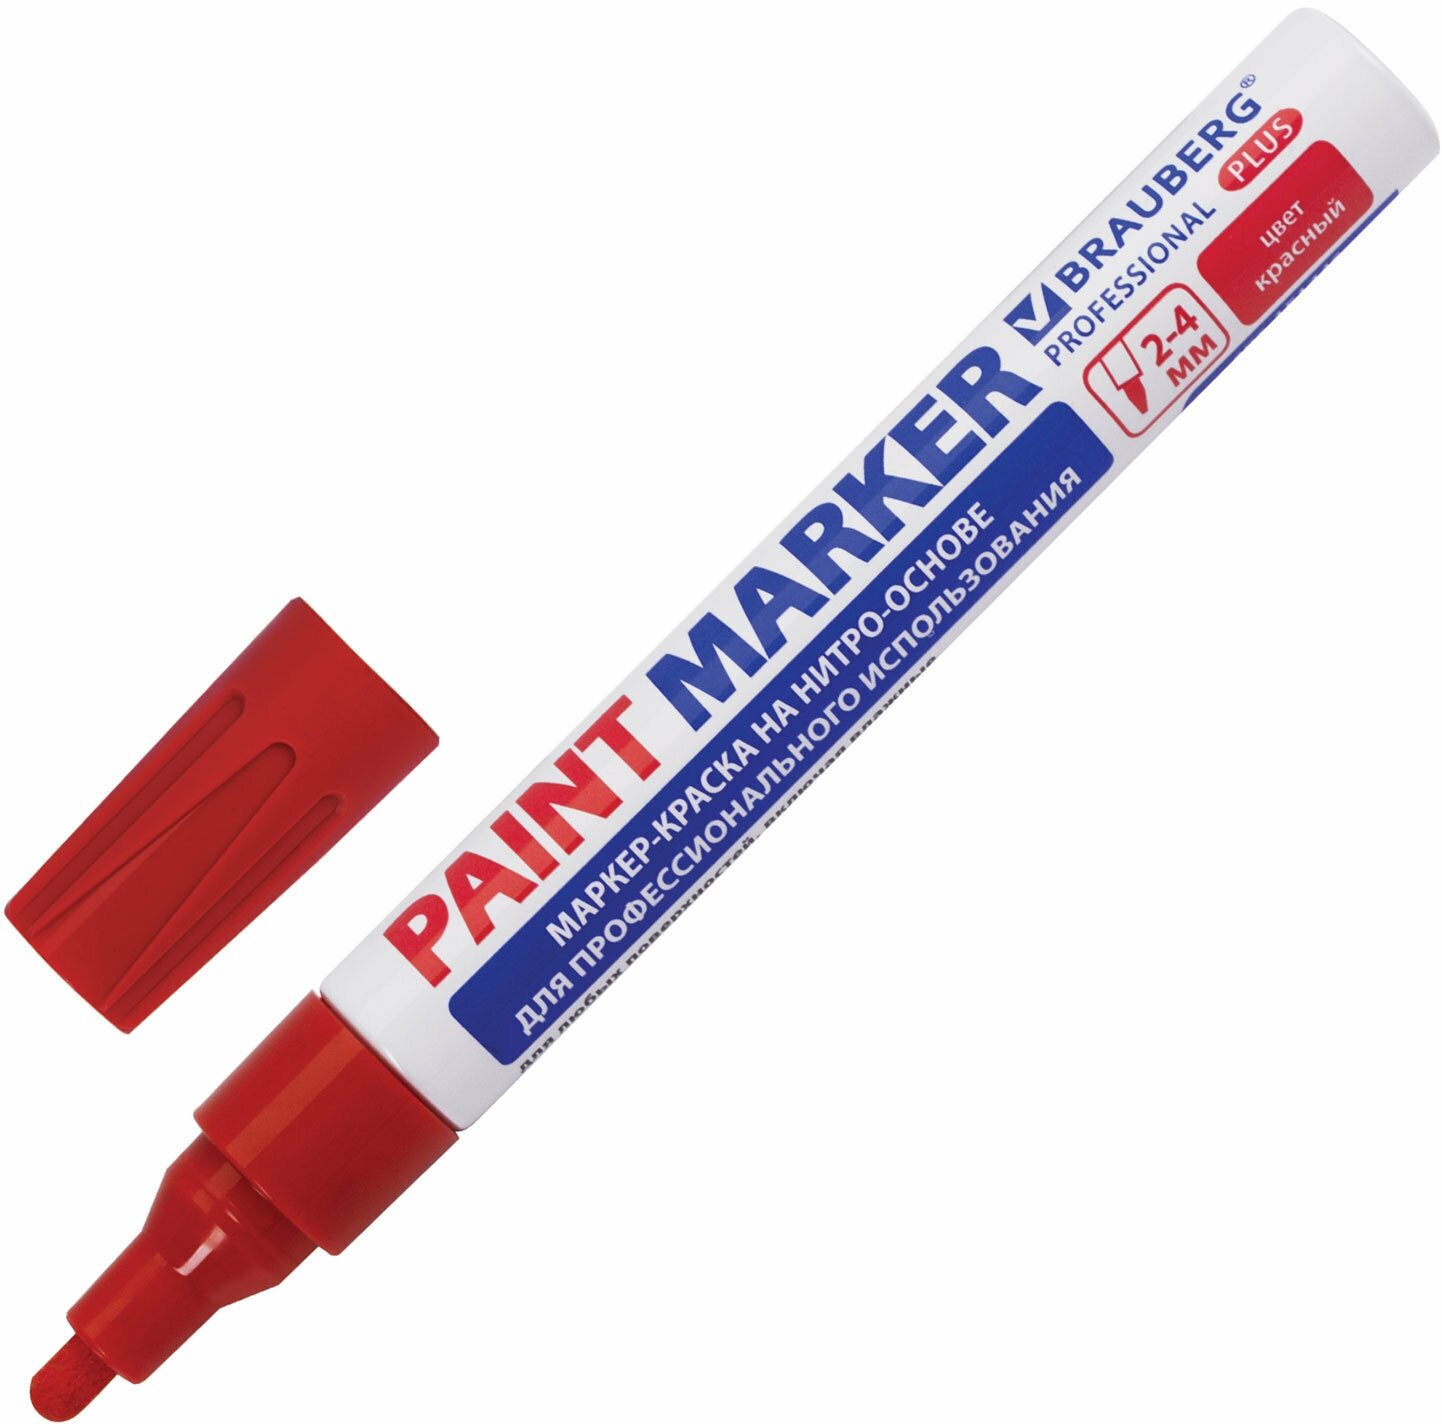 Маркер-краска лаковый paint marker по стеклу / бетону / авто 4 мм, Красный, Нитро-основа, алюминиевый корпус, Brauberg Professional Plus, 151446